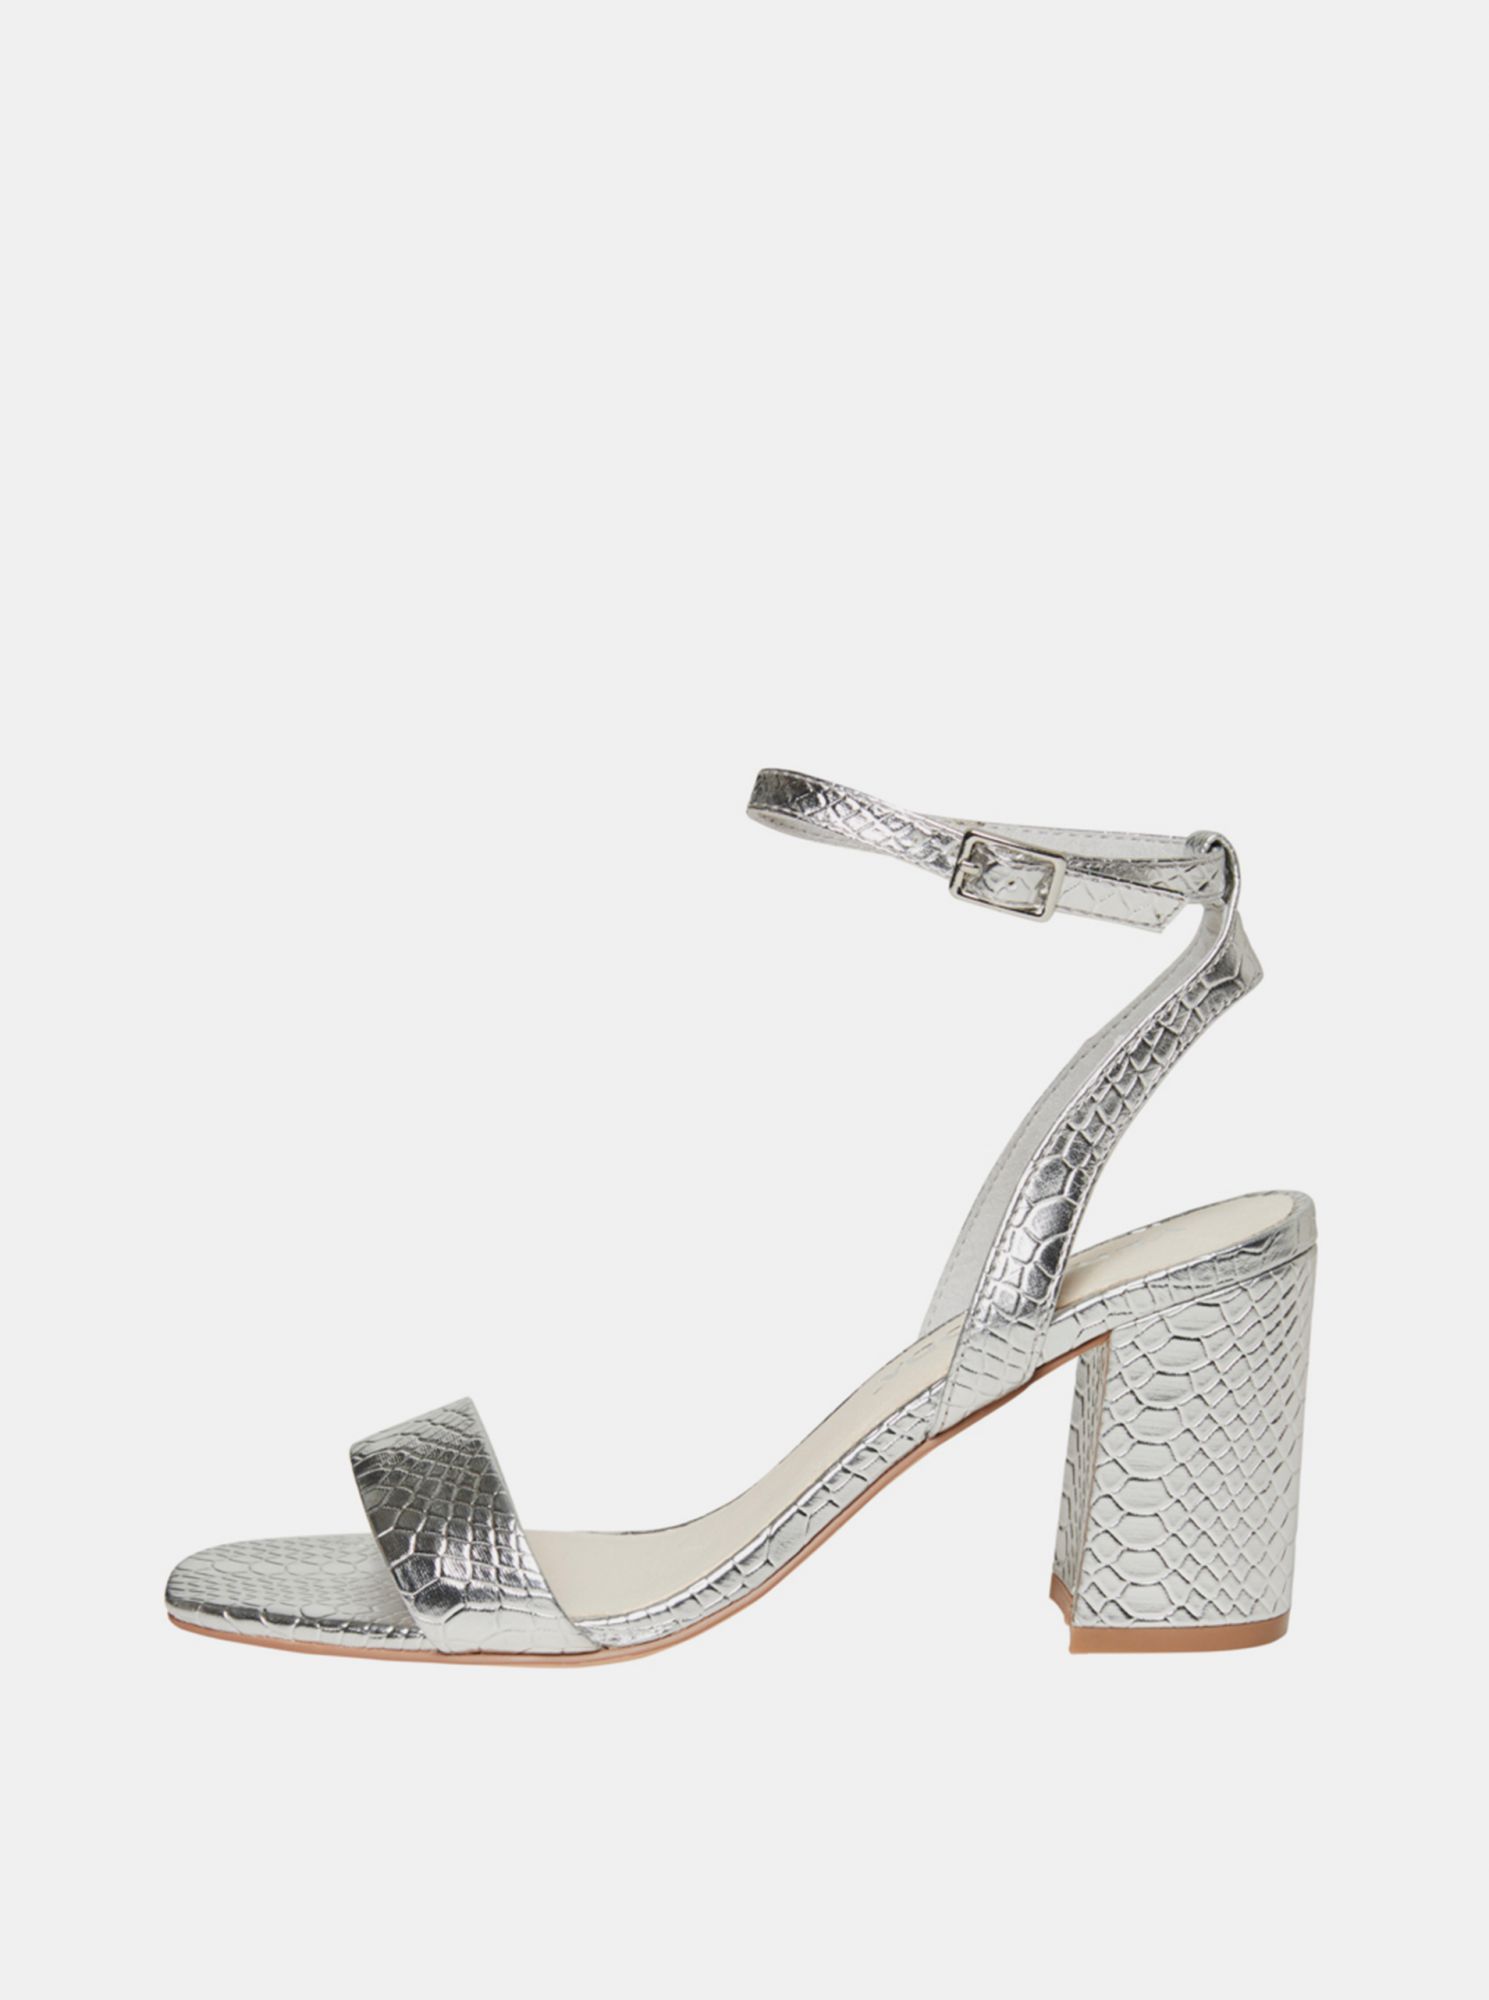 Sandálky s hadím vzorem ve stříbrné barvě VERO MODA Liva